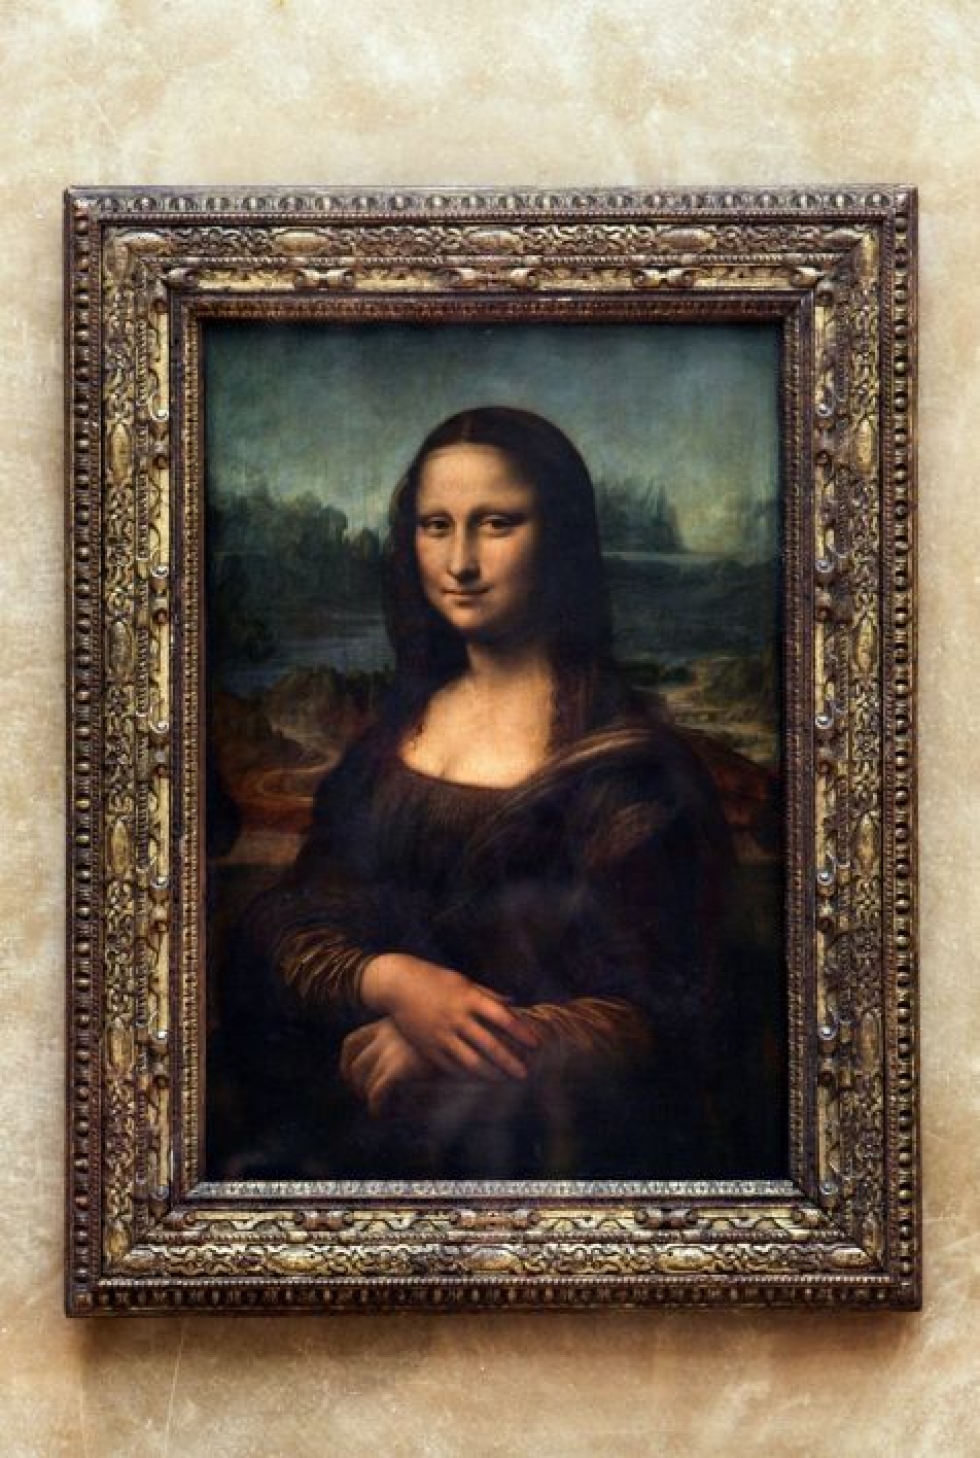 Mona Lisa saapui Louvreen vuonna 1804, jonka jälkeen sitä on liikuteltu äärimmäisen vähän. LEHTIKUVA/AFP